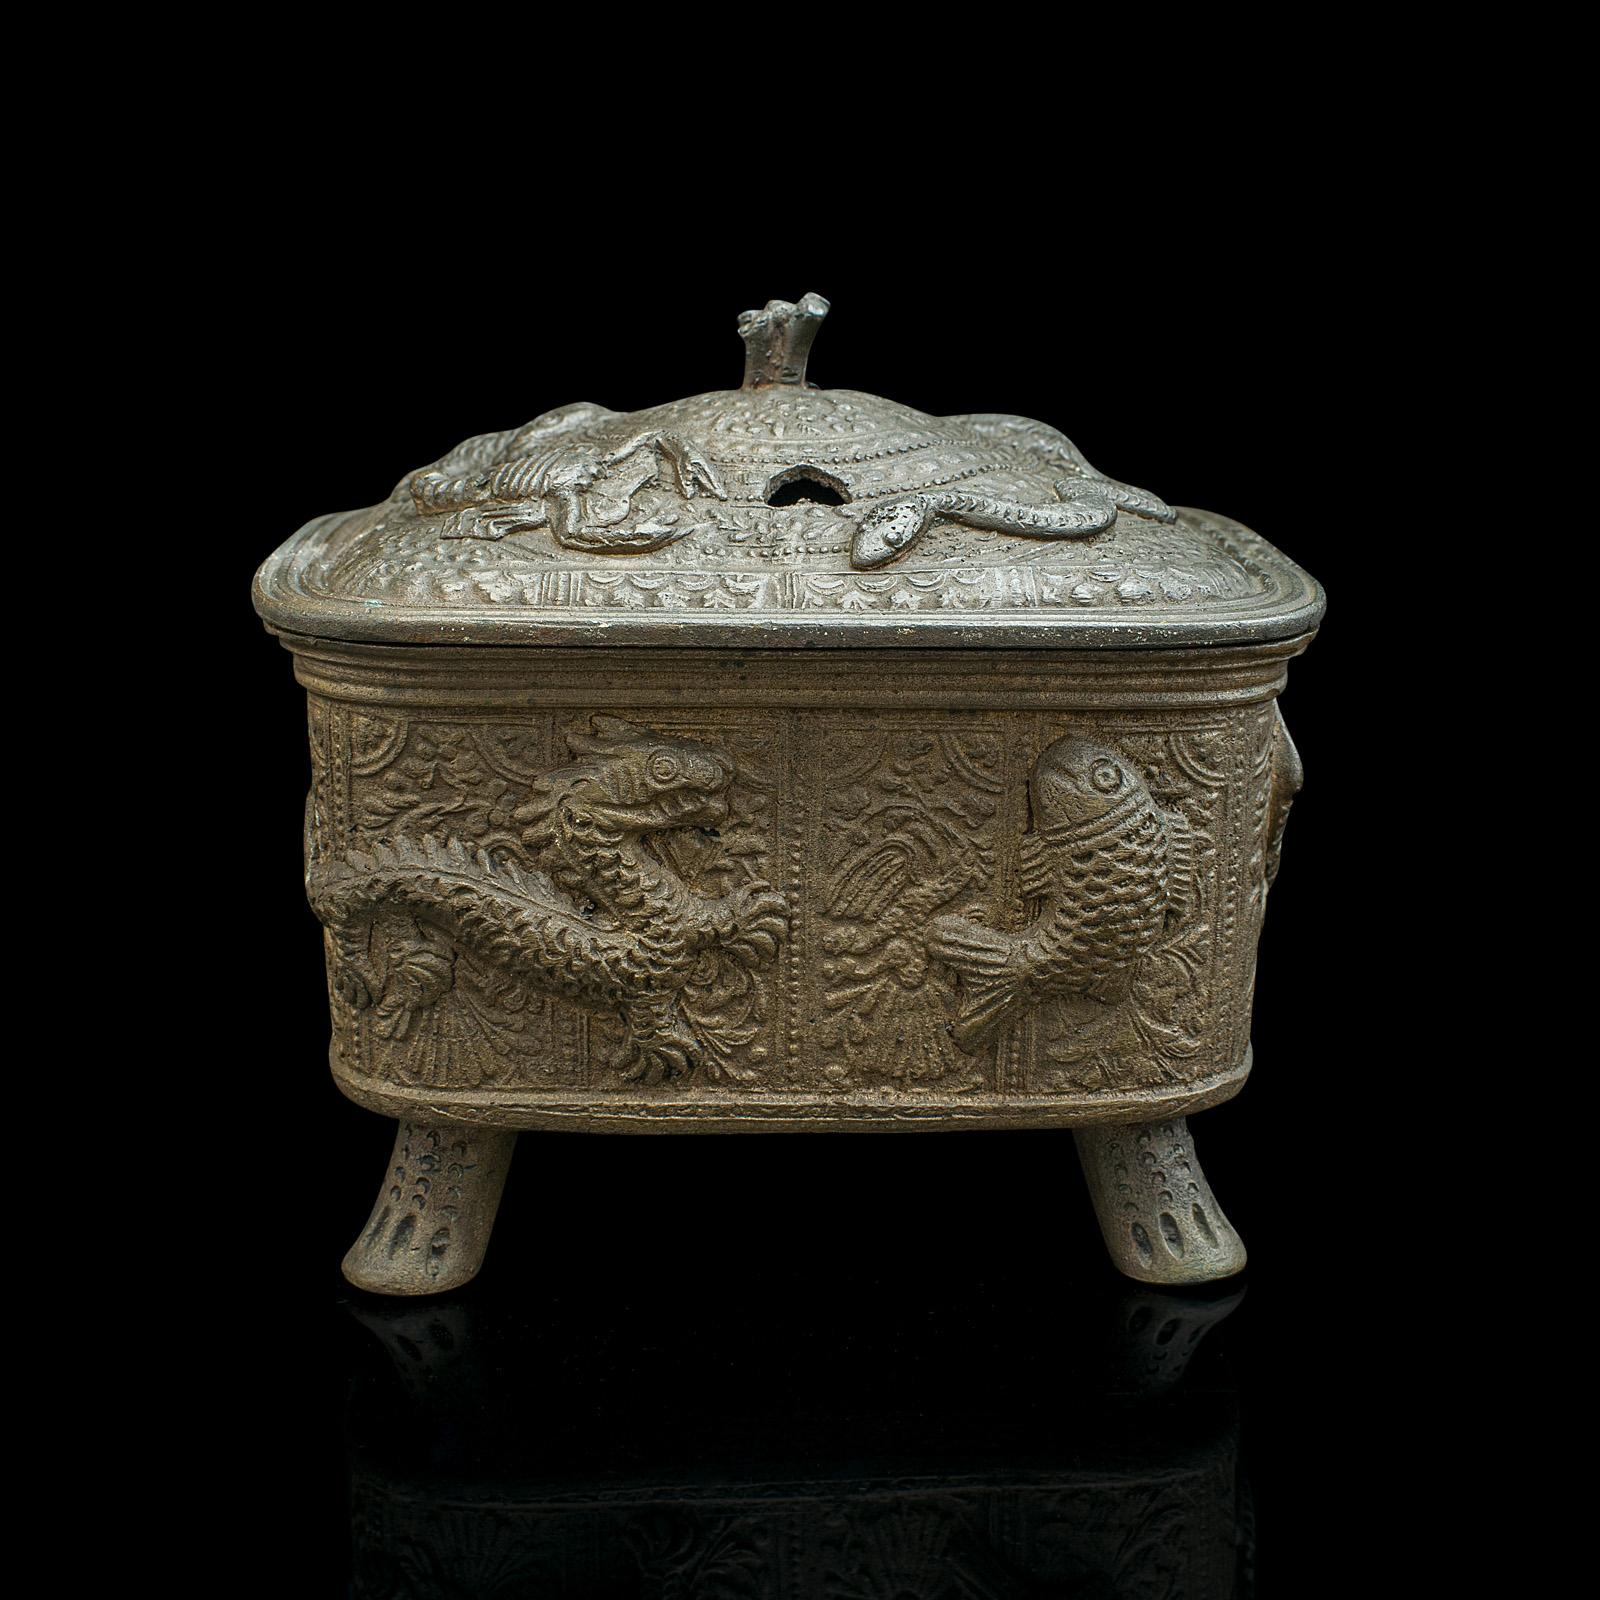 Il s'agit d'un encensoir décoratif ancien. Brûleur d'encens chinois en bronze, datant du début de la période victorienne, vers 1850.

Brûleur de grande taille et délicieusement orné, avec une finition attrayante.
Présente une patine d'ancienneté